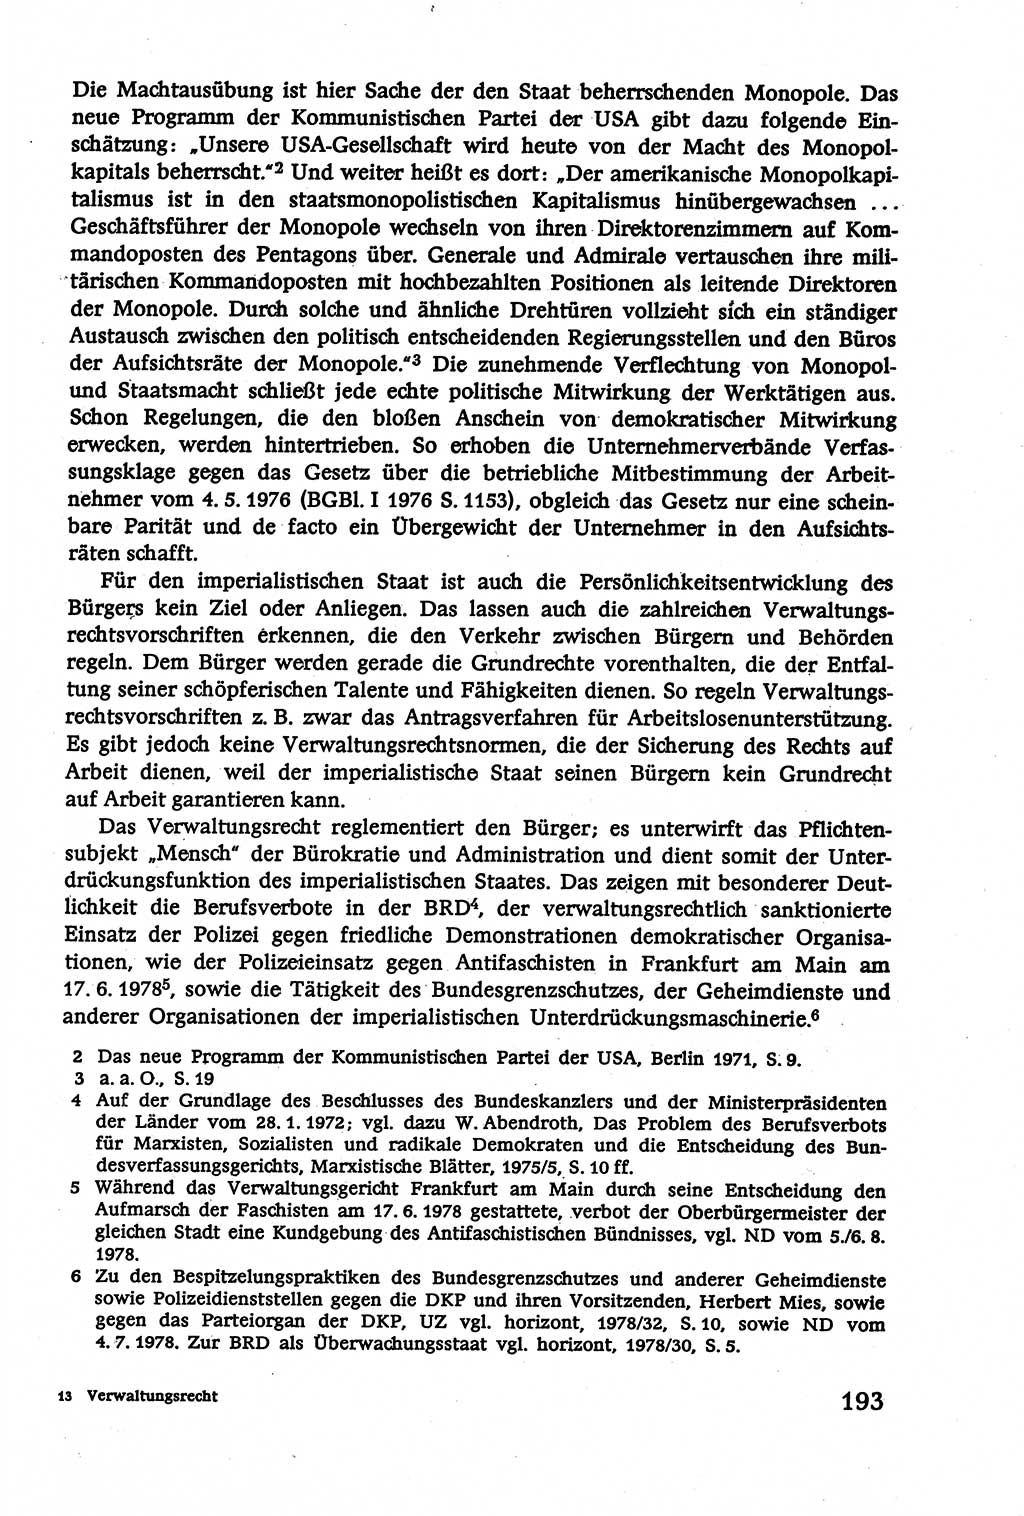 Verwaltungsrecht [Deutsche Demokratische Republik (DDR)], Lehrbuch 1979, Seite 193 (Verw.-R. DDR Lb. 1979, S. 193)